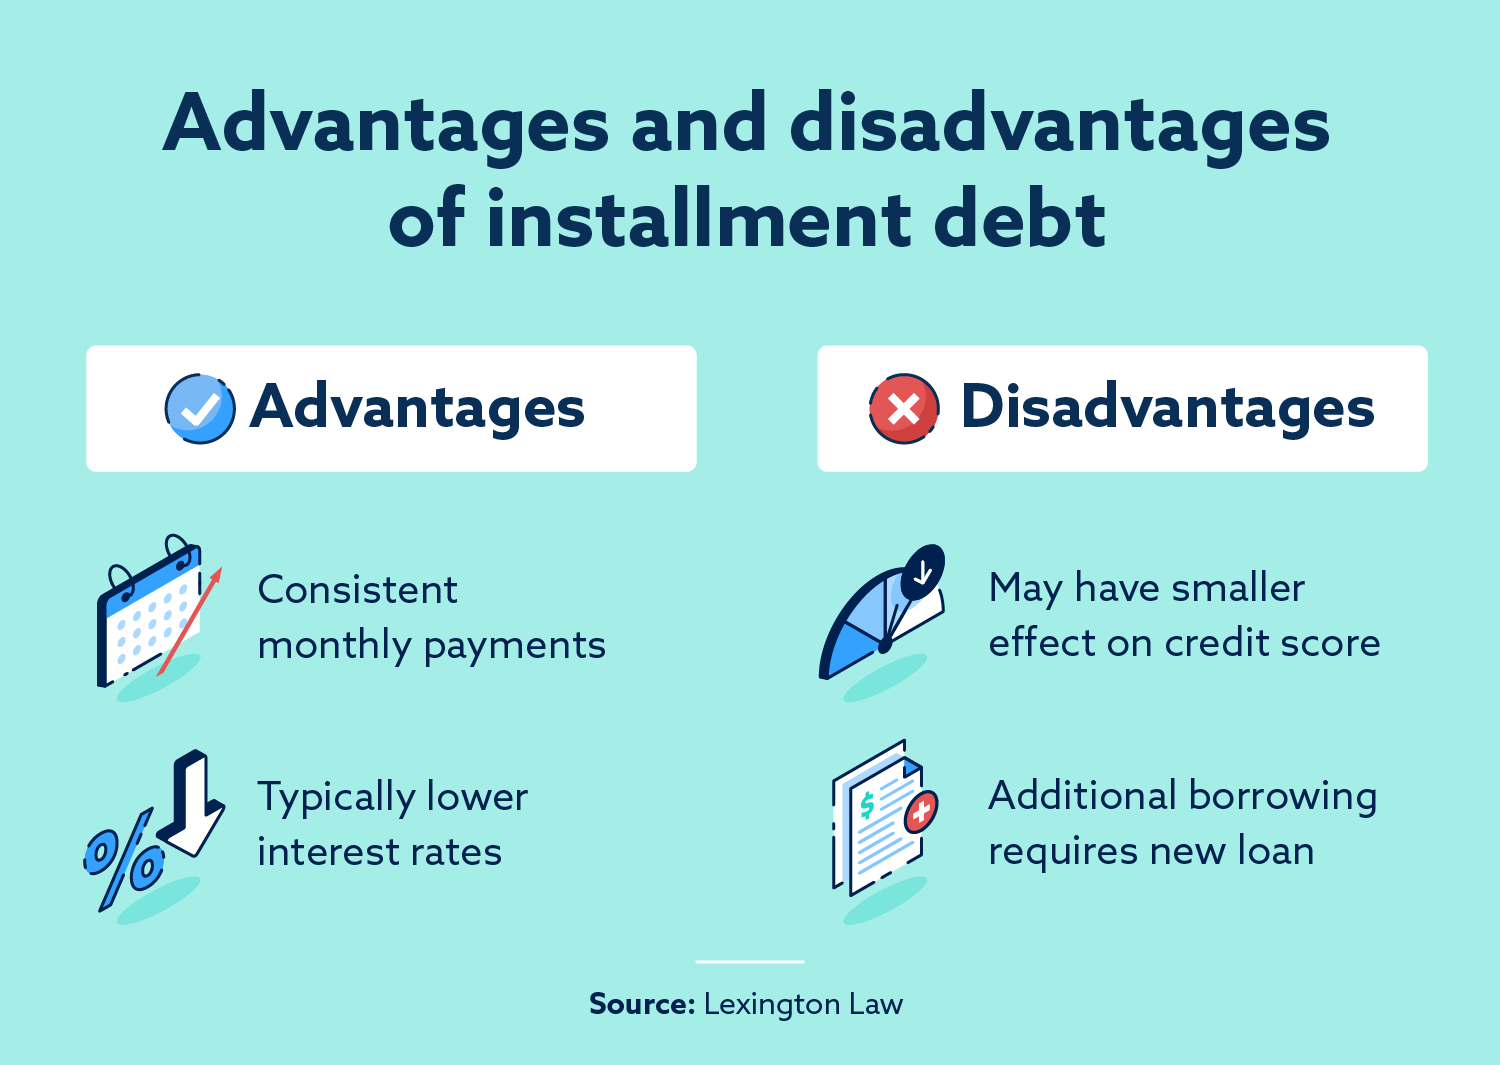 Advantages and disadvantages of installment debt.